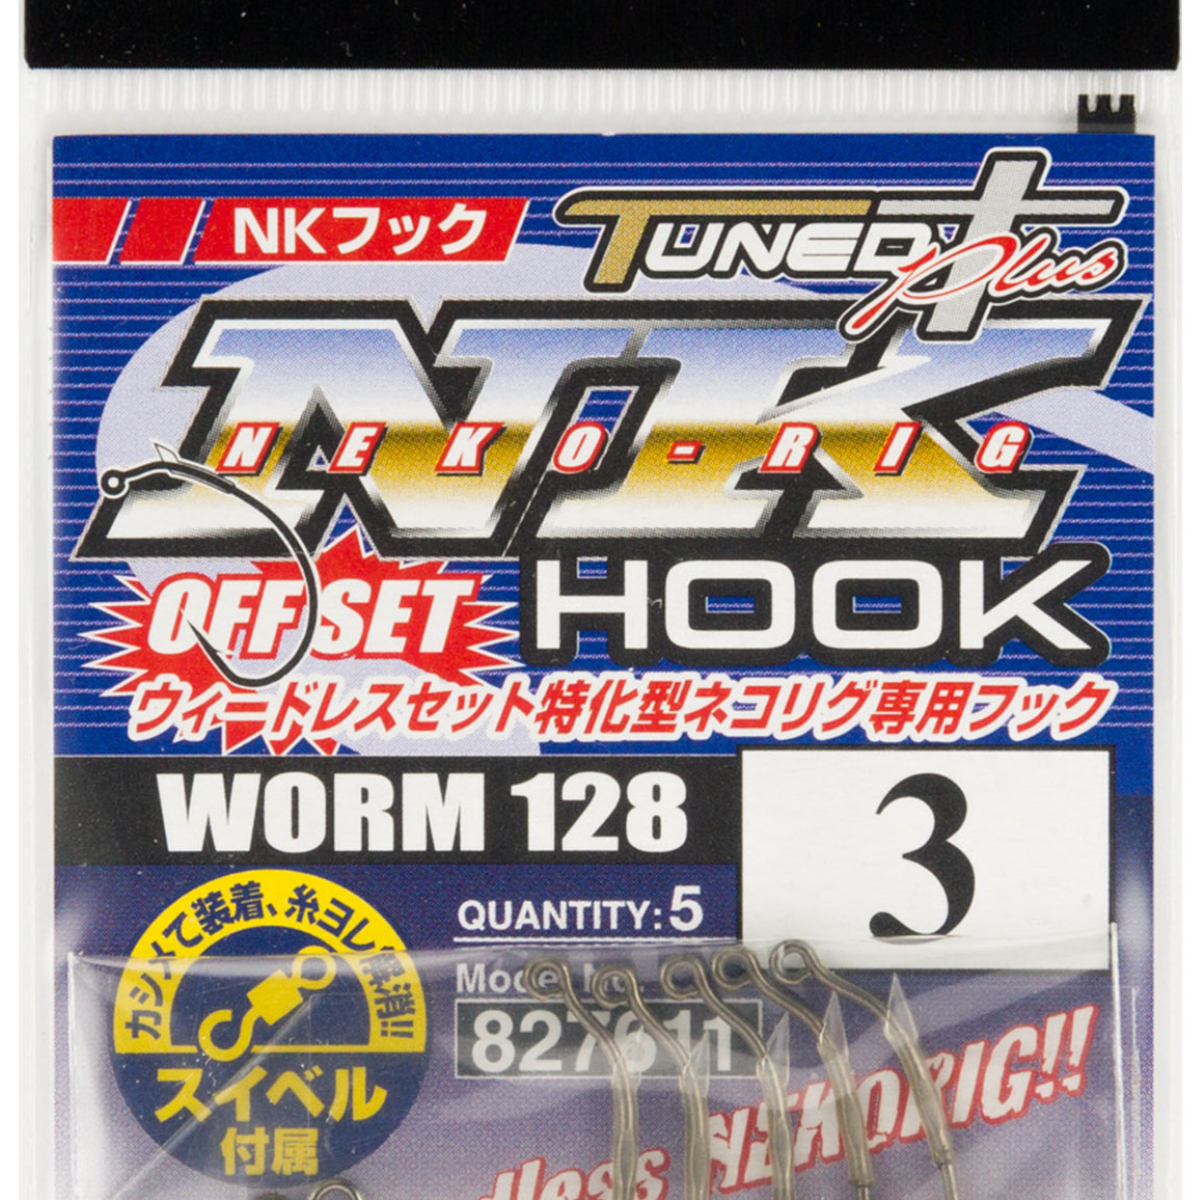 Decoy Worm 128 NK Hook